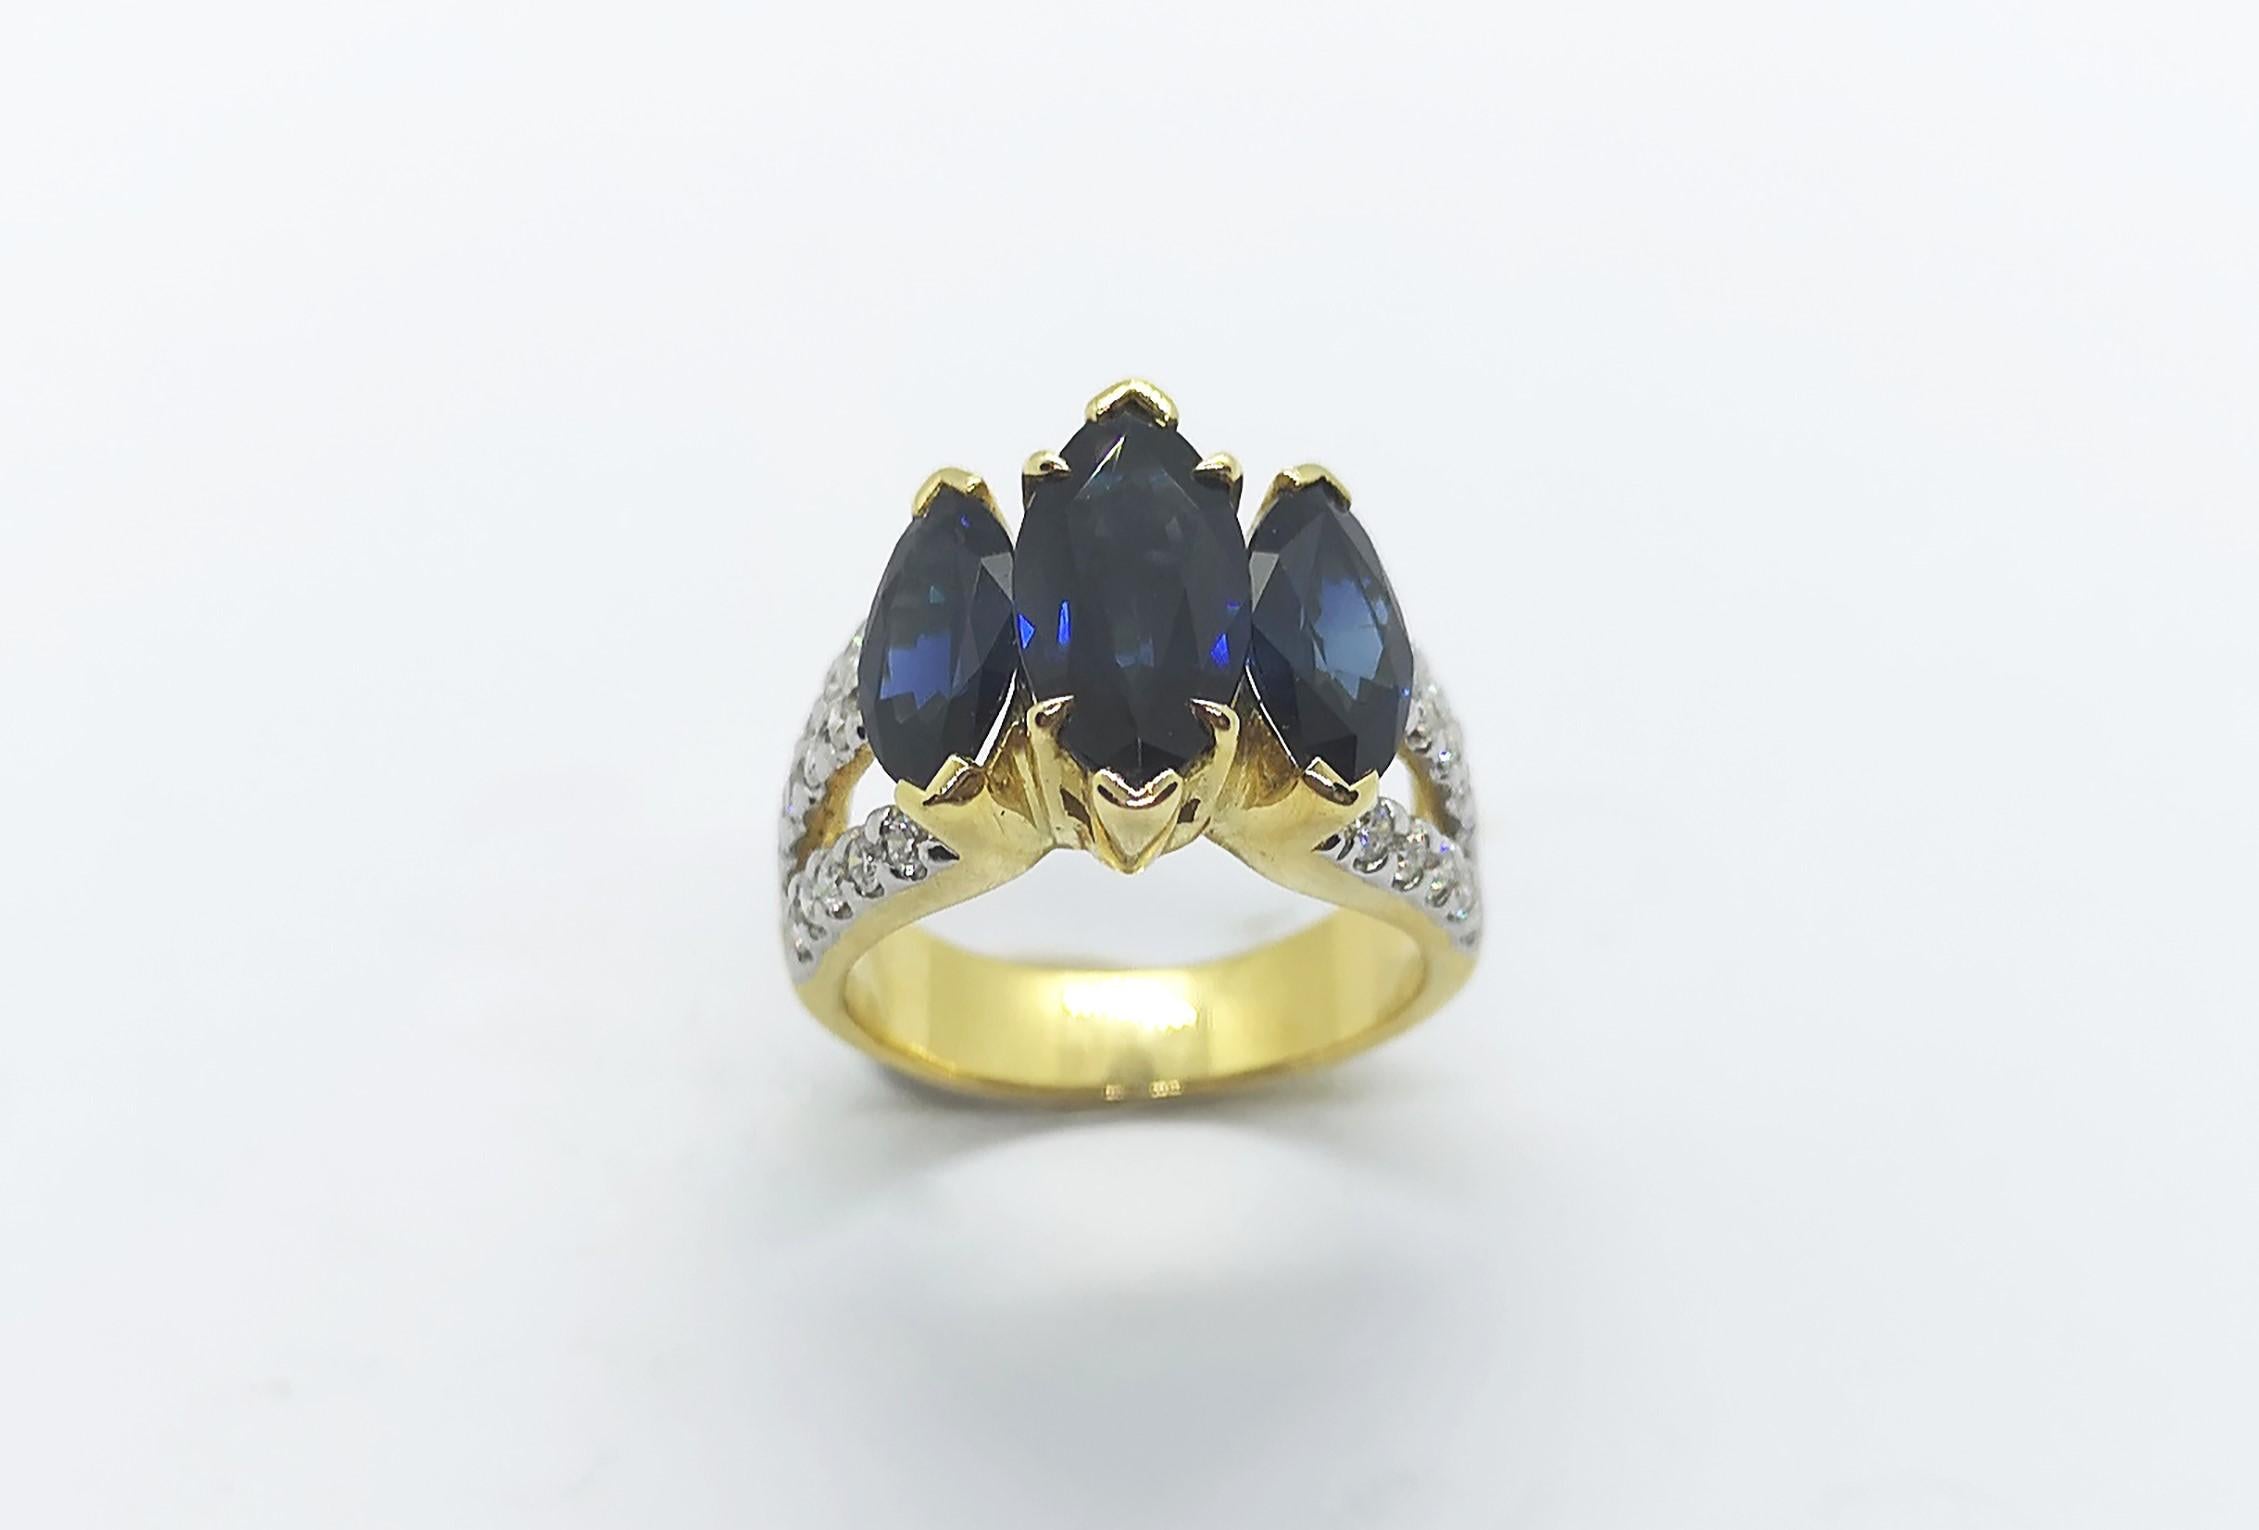 Bague en saphir bleu de 4,16 carats et diamant de 0,53 carat, montés sur or 18 carats

Largeur : 1,5 cm
Longueur : 1,4 cm 
Taille de l'anneau : 50

